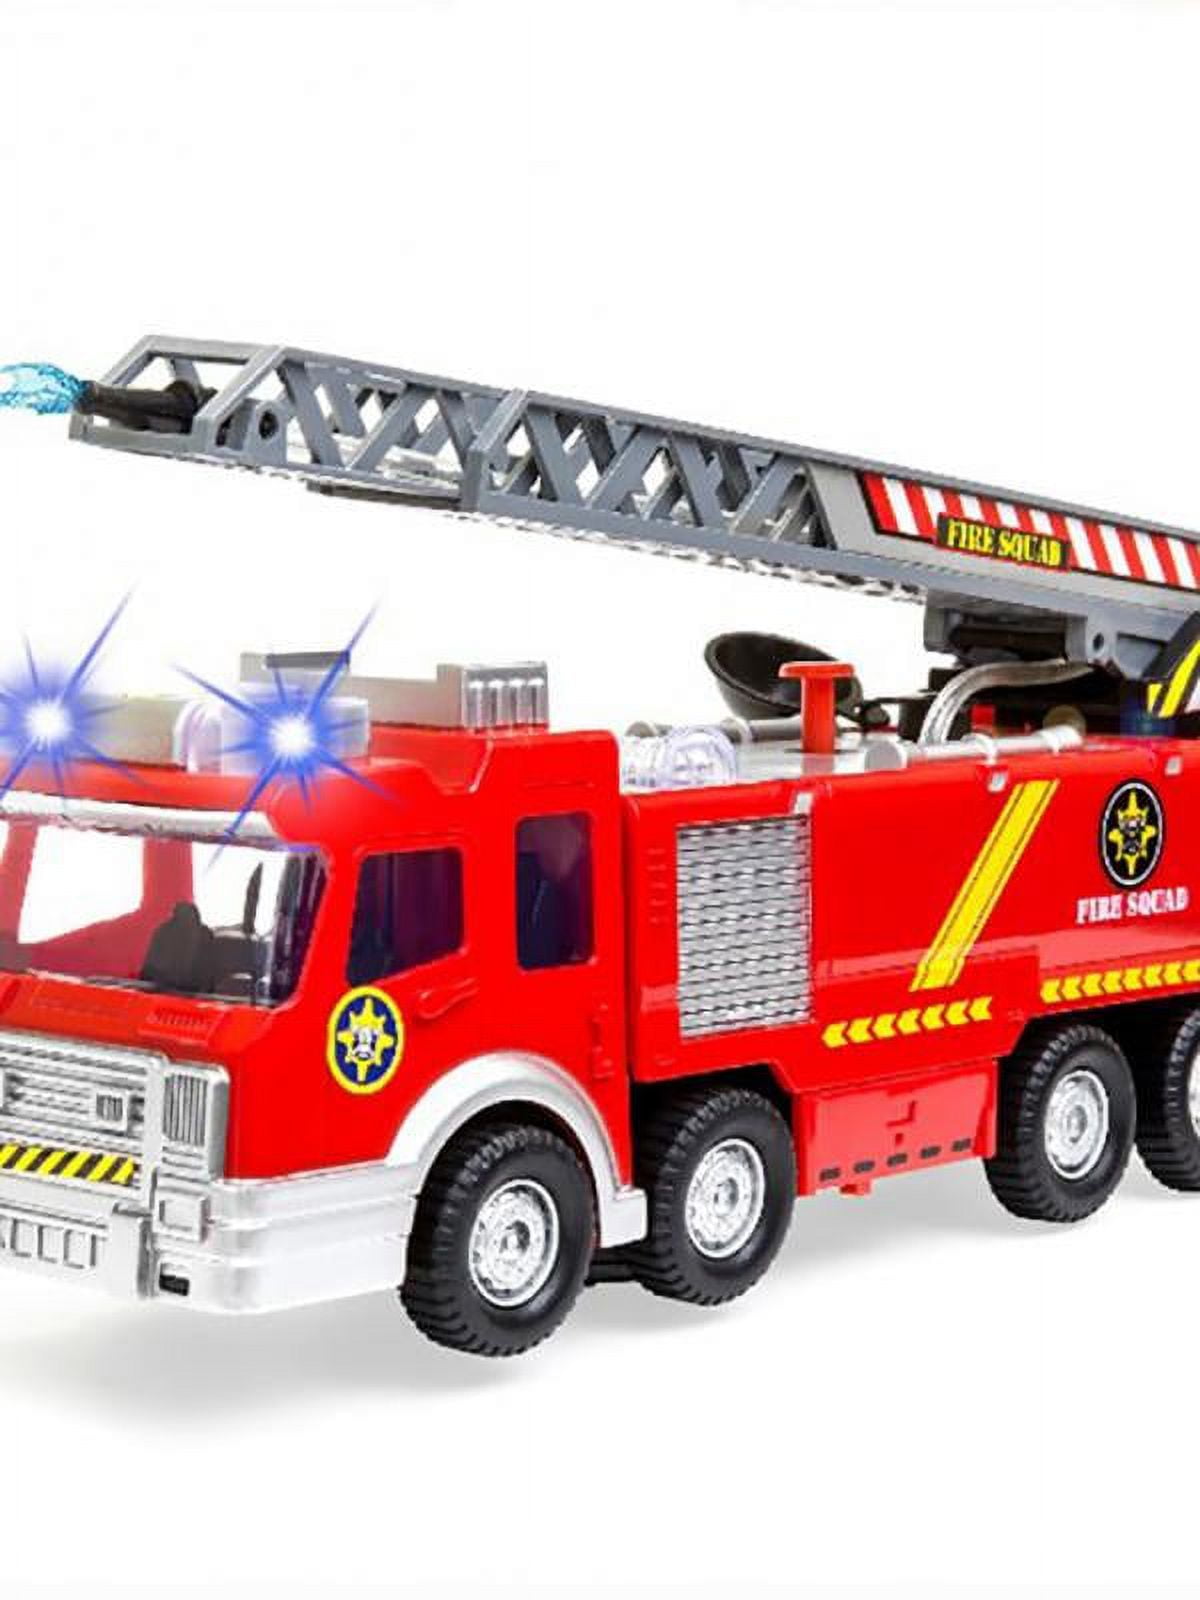 Topumt Fire Truck Toy w/Lights & Sounds,9 Car Fire Engine Truck w